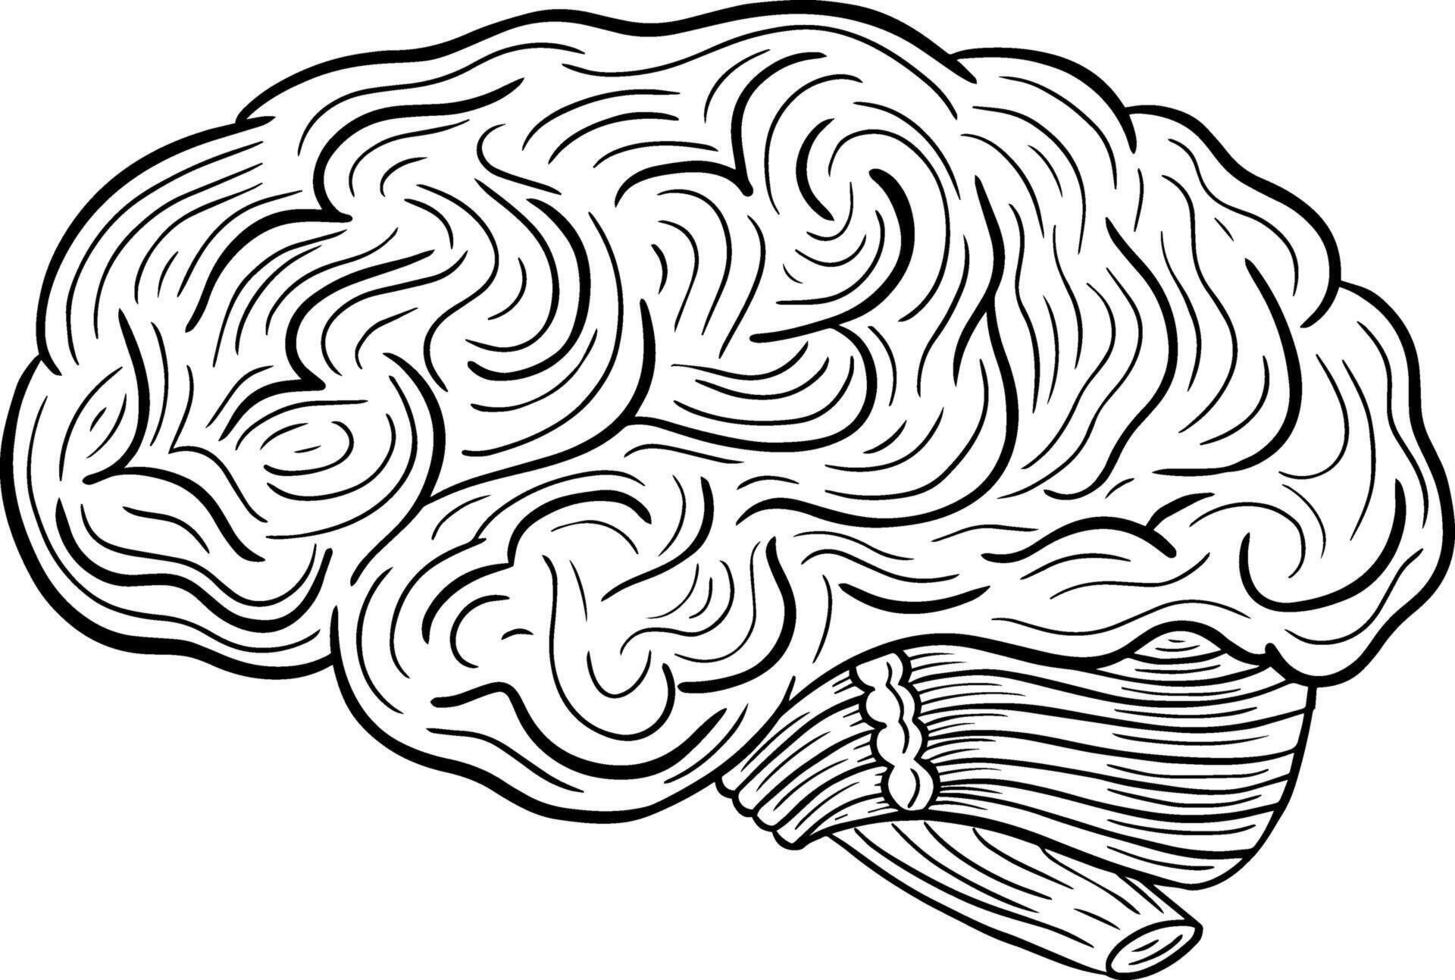 humano cerebro mano dibujado grabado bosquejo dibujo vector